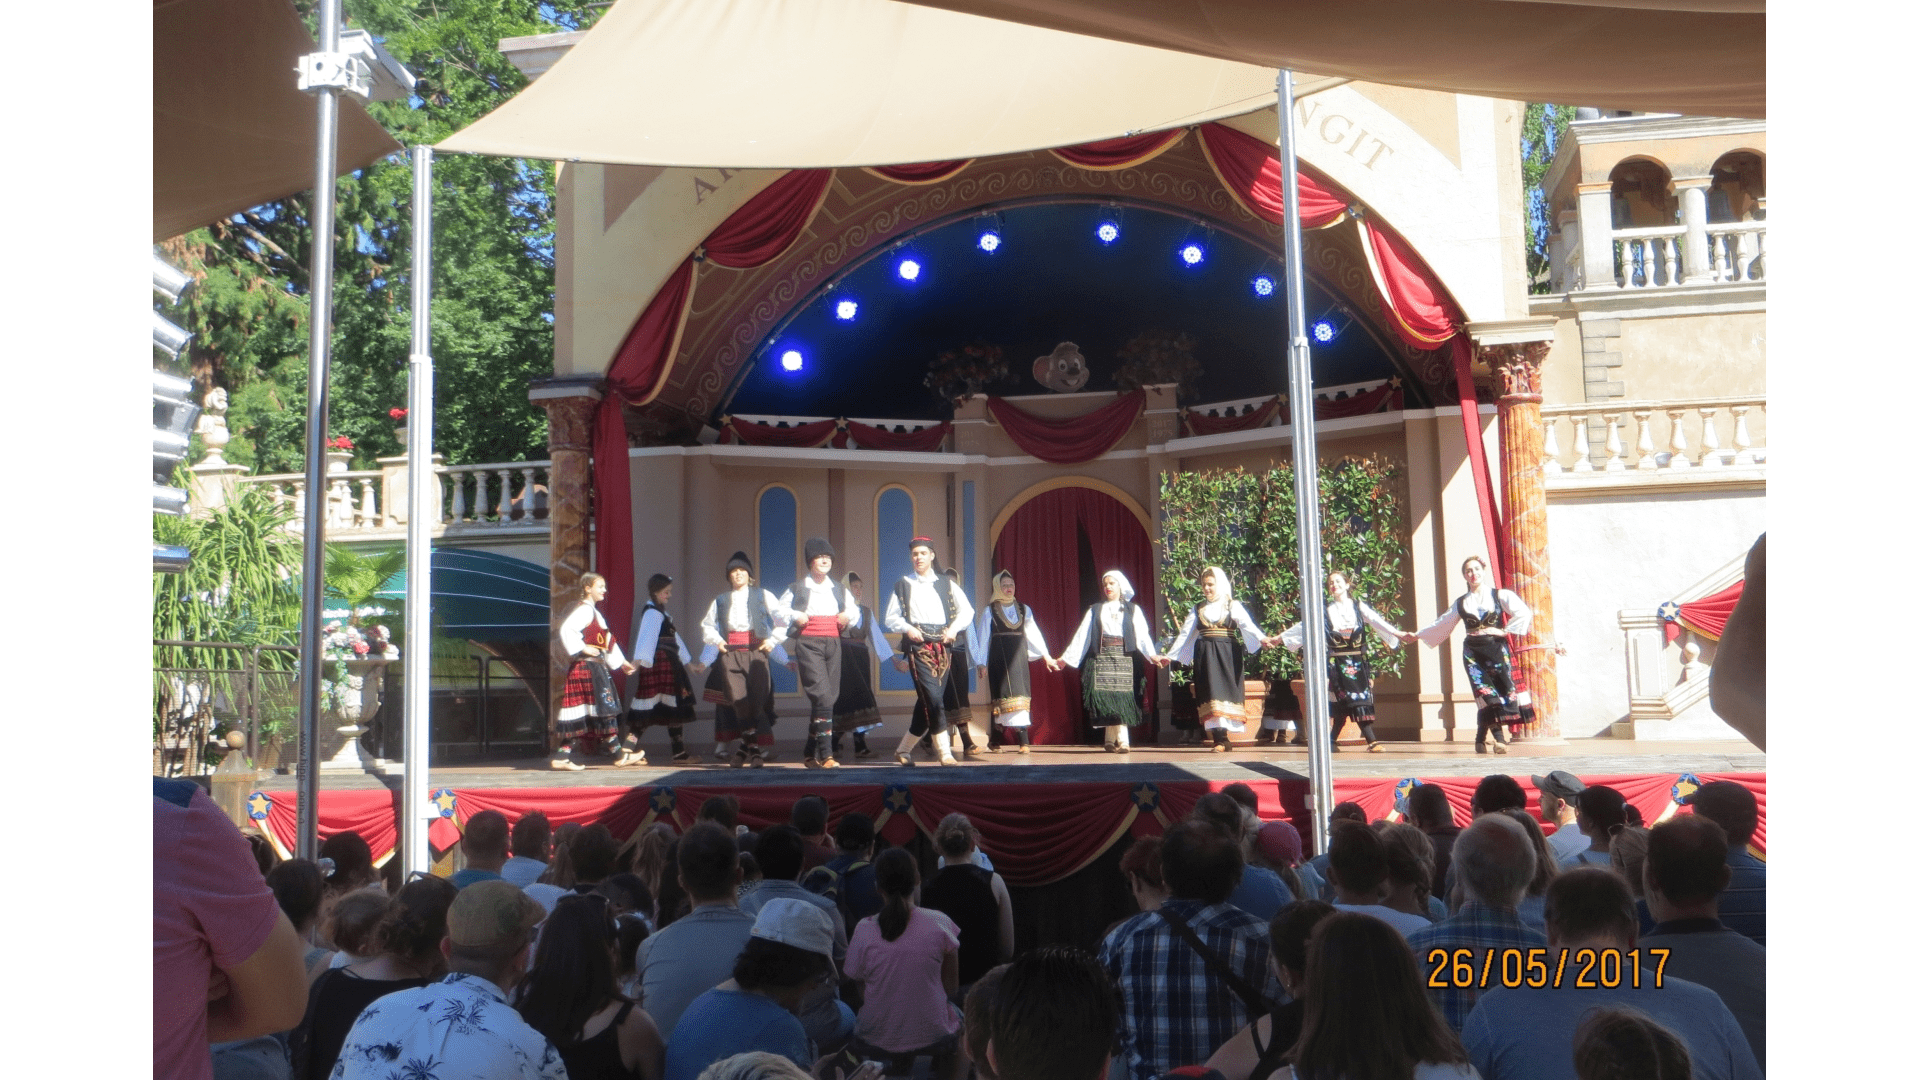 Die serbischen Jugendlichen wurden auch zu einem Besuch des Europaparks eingeladen. Dort hatten sie einen Auftritt auf der Freilichtbühne. Zahlreiche Besucher spendeten Applaus. Foto: Archiv Freundeskreis Filipowa